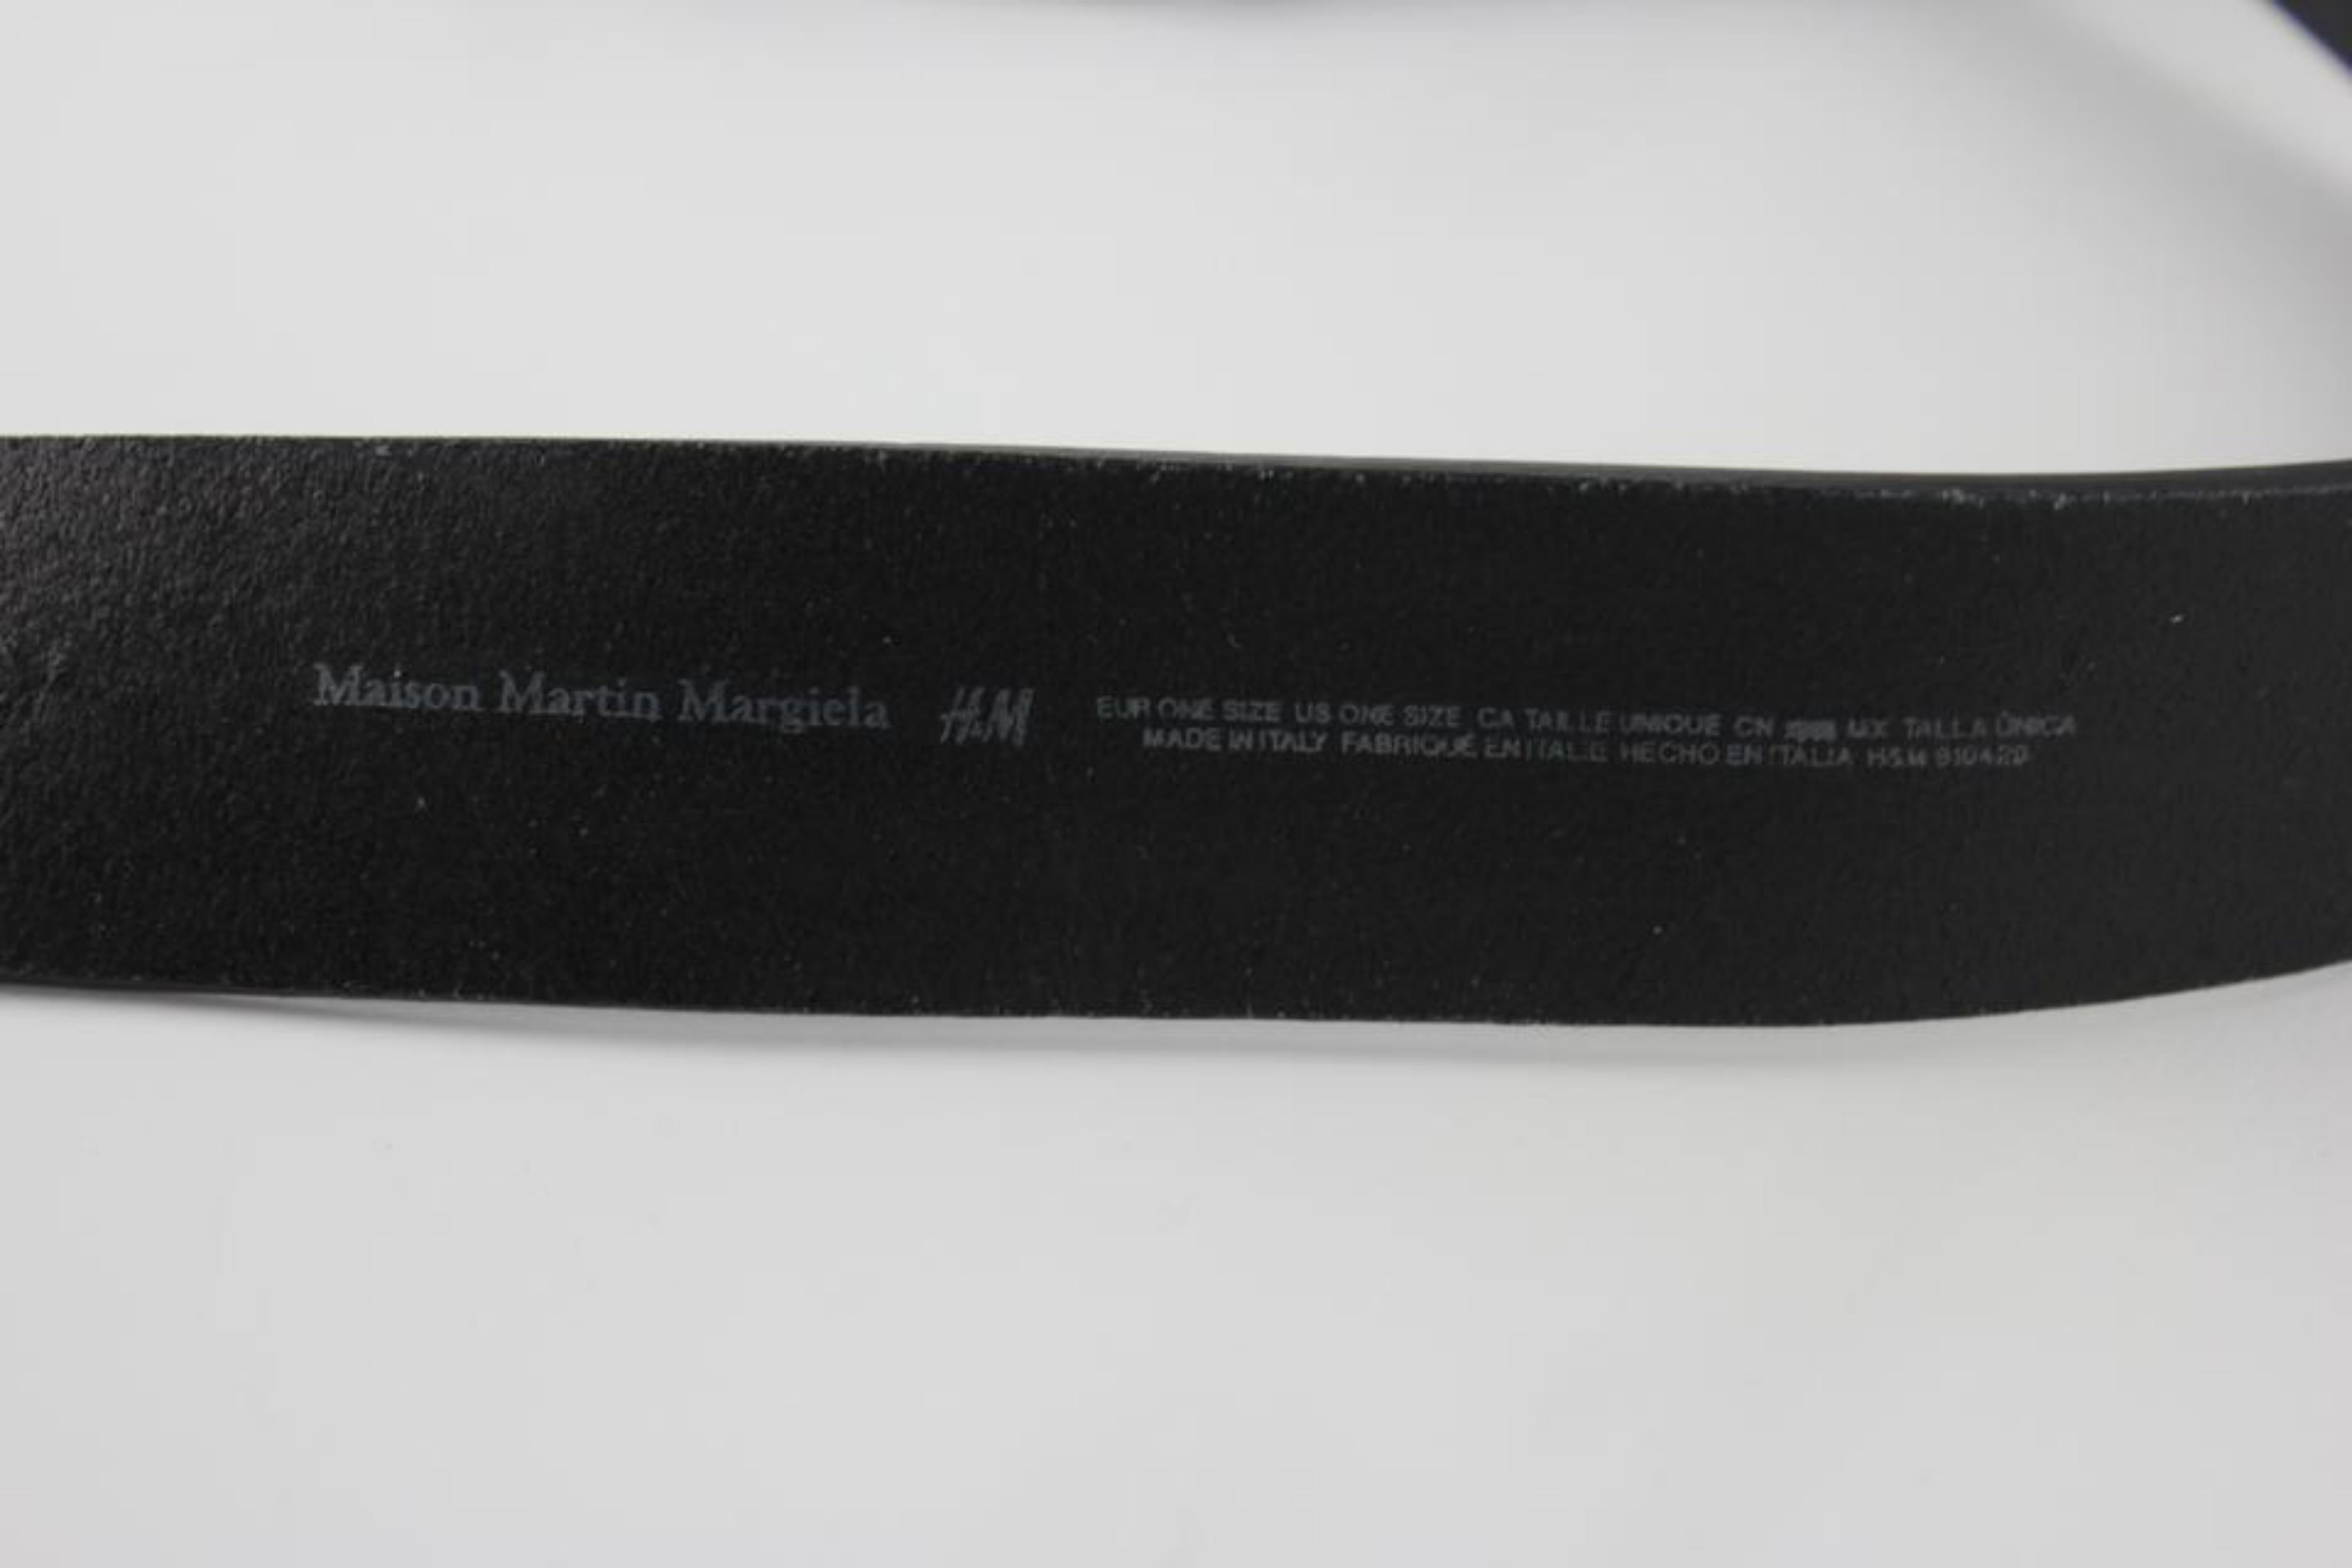 h&m men's belts